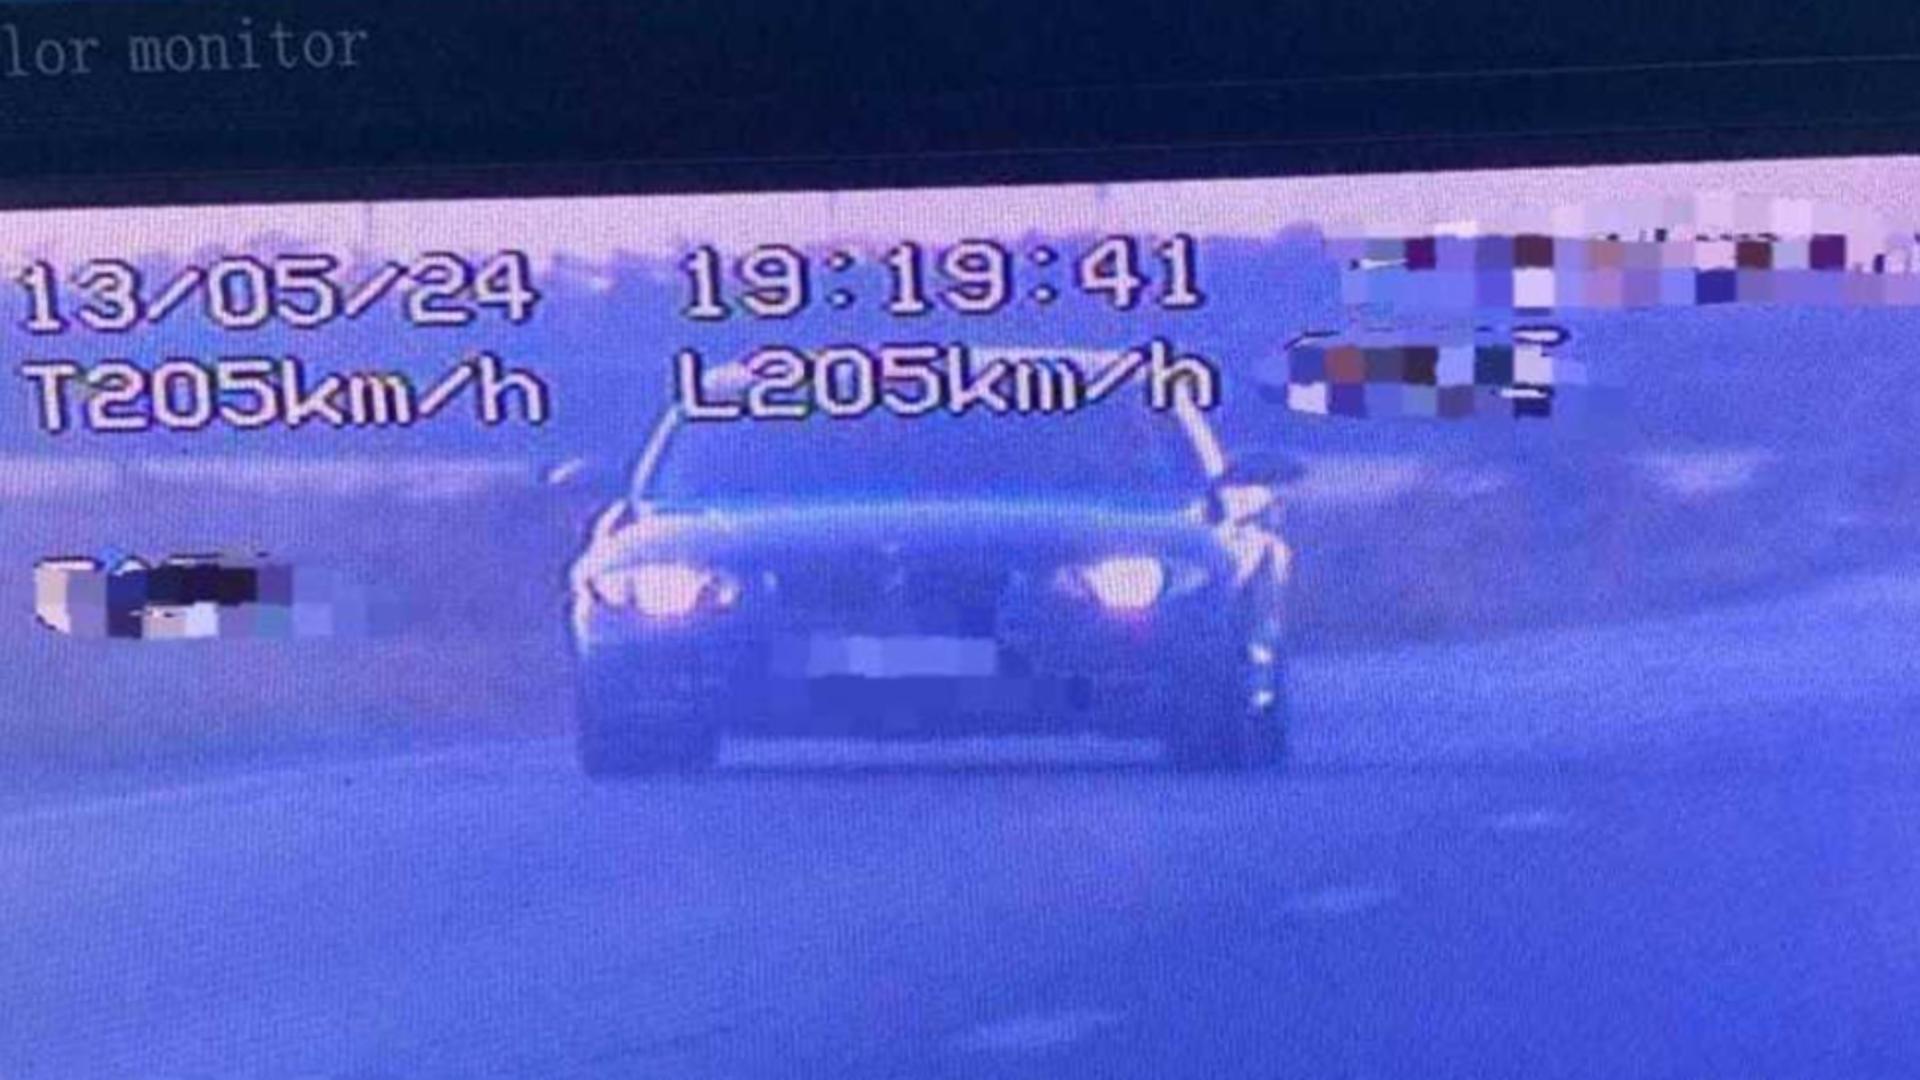 Șofer prins cu 205 km/h în zona cu viteză maximă de 70 km/h. Foto/Poliția